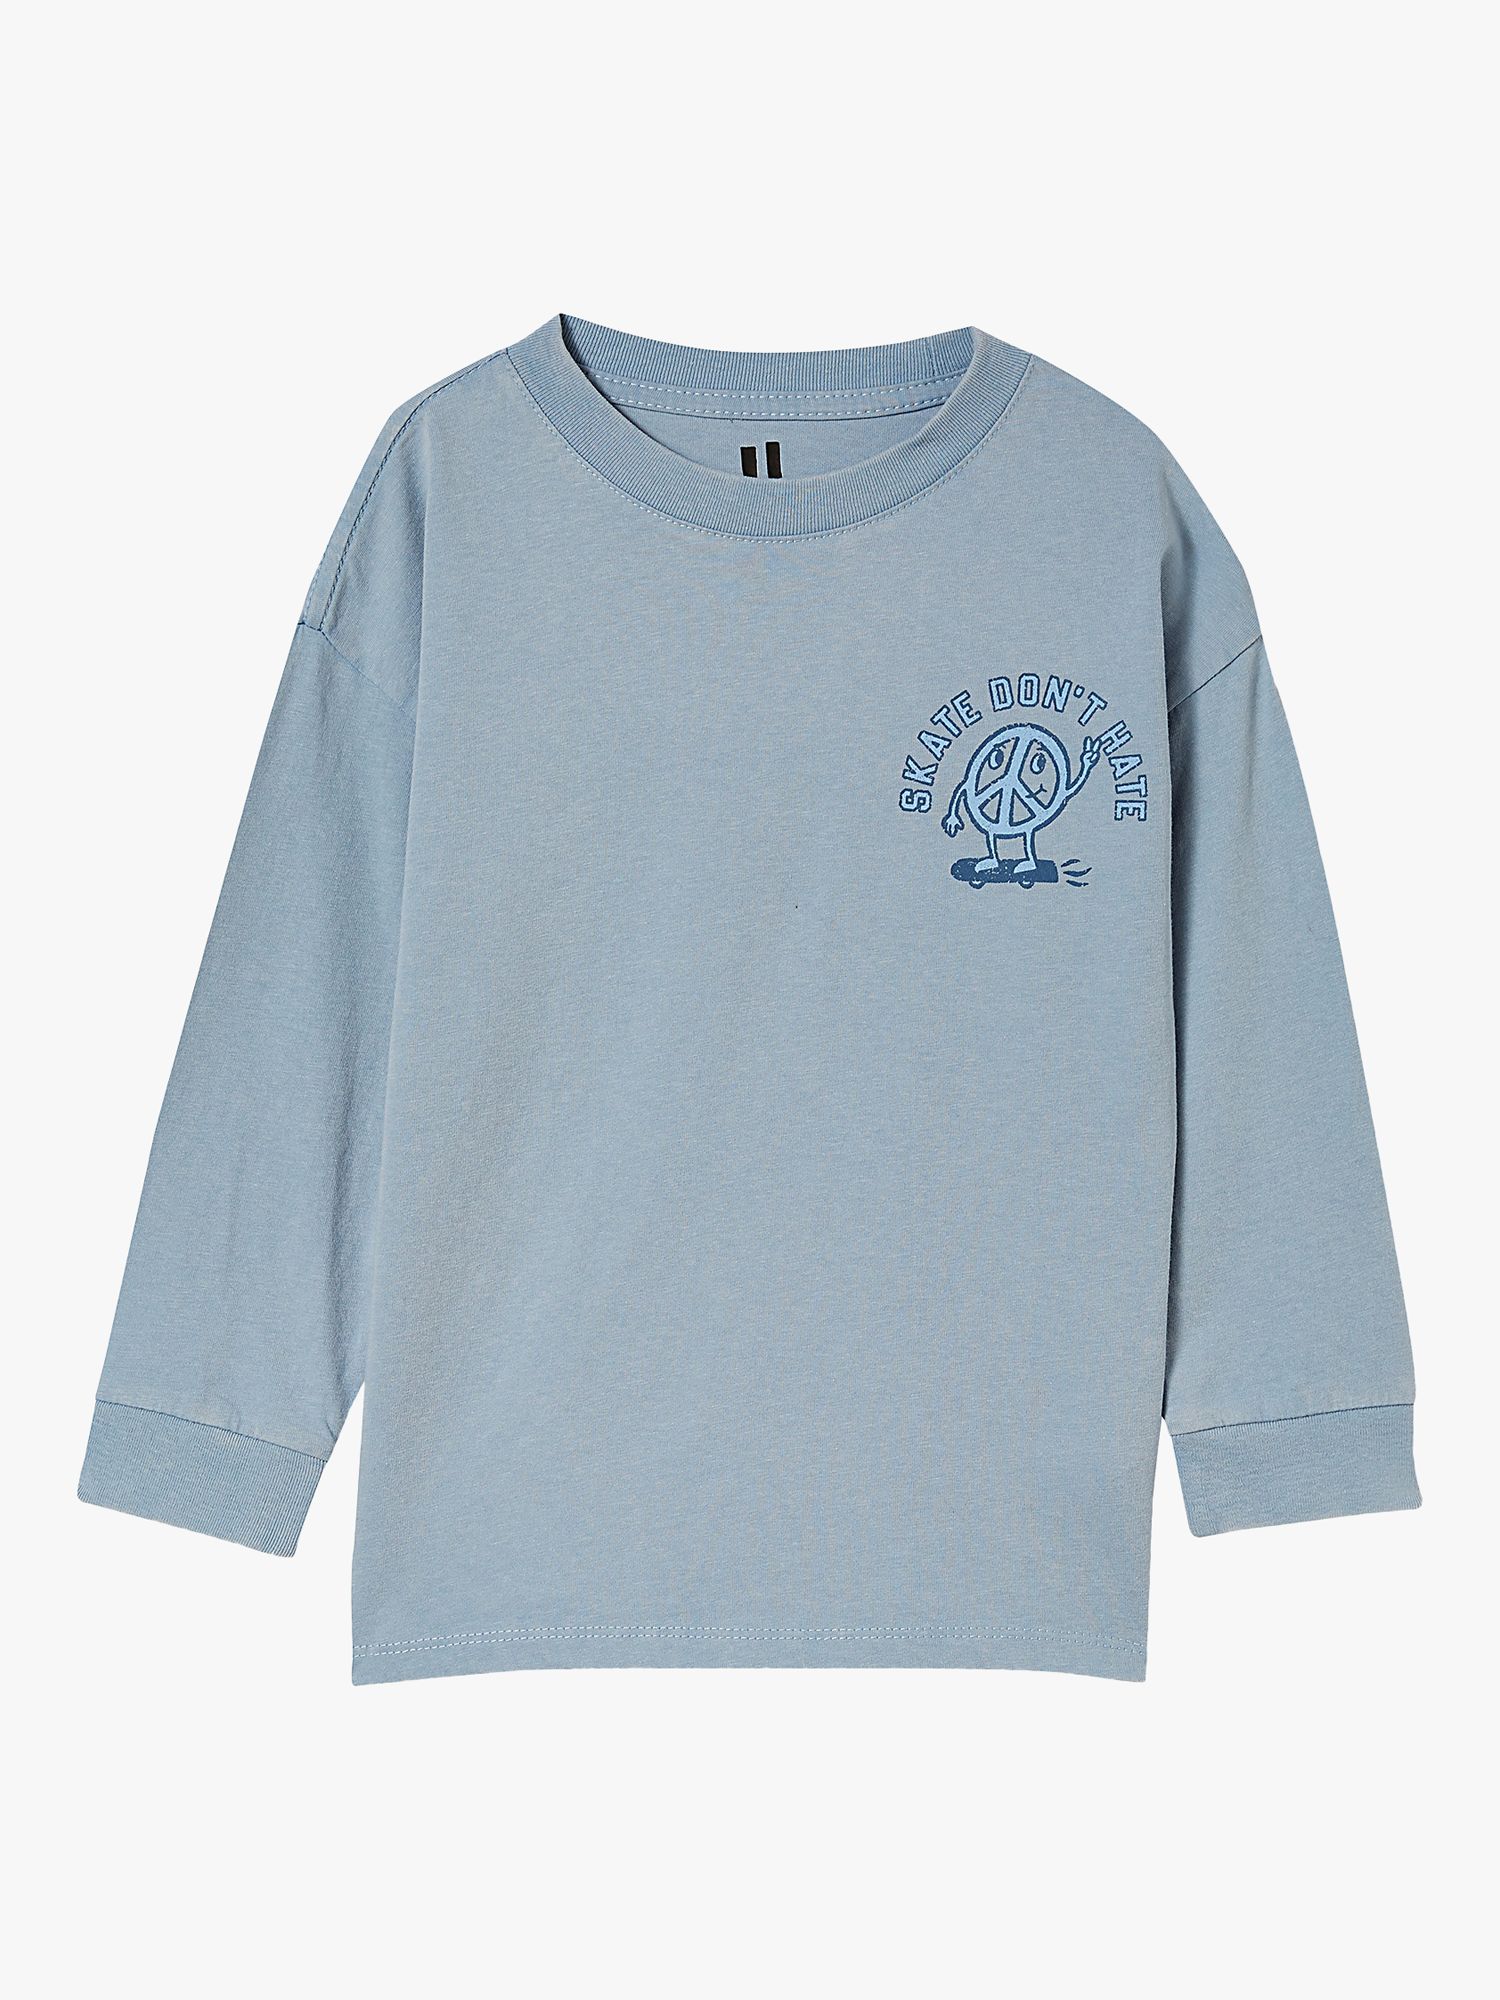 Kleding Unisex kinderkleding Tops & T-shirts Vintage 1987 GI Joe gebreide kiddie top 